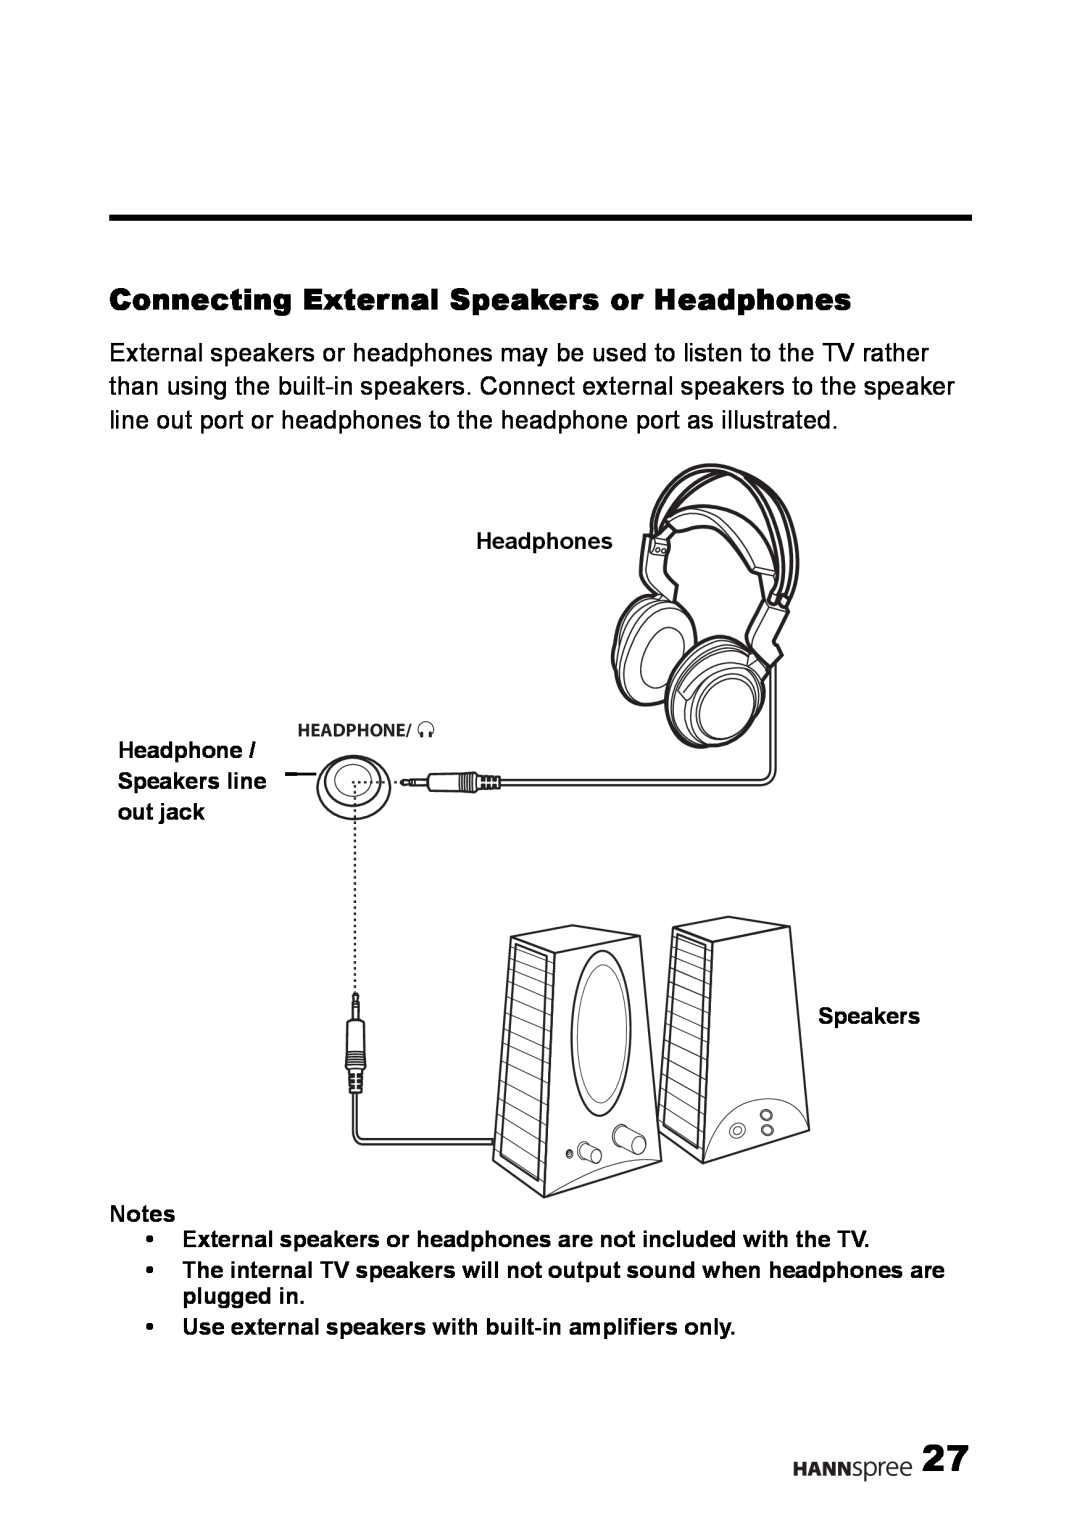 HANNspree LT09-10U1-000 user manual Connecting External Speakers or Headphones 